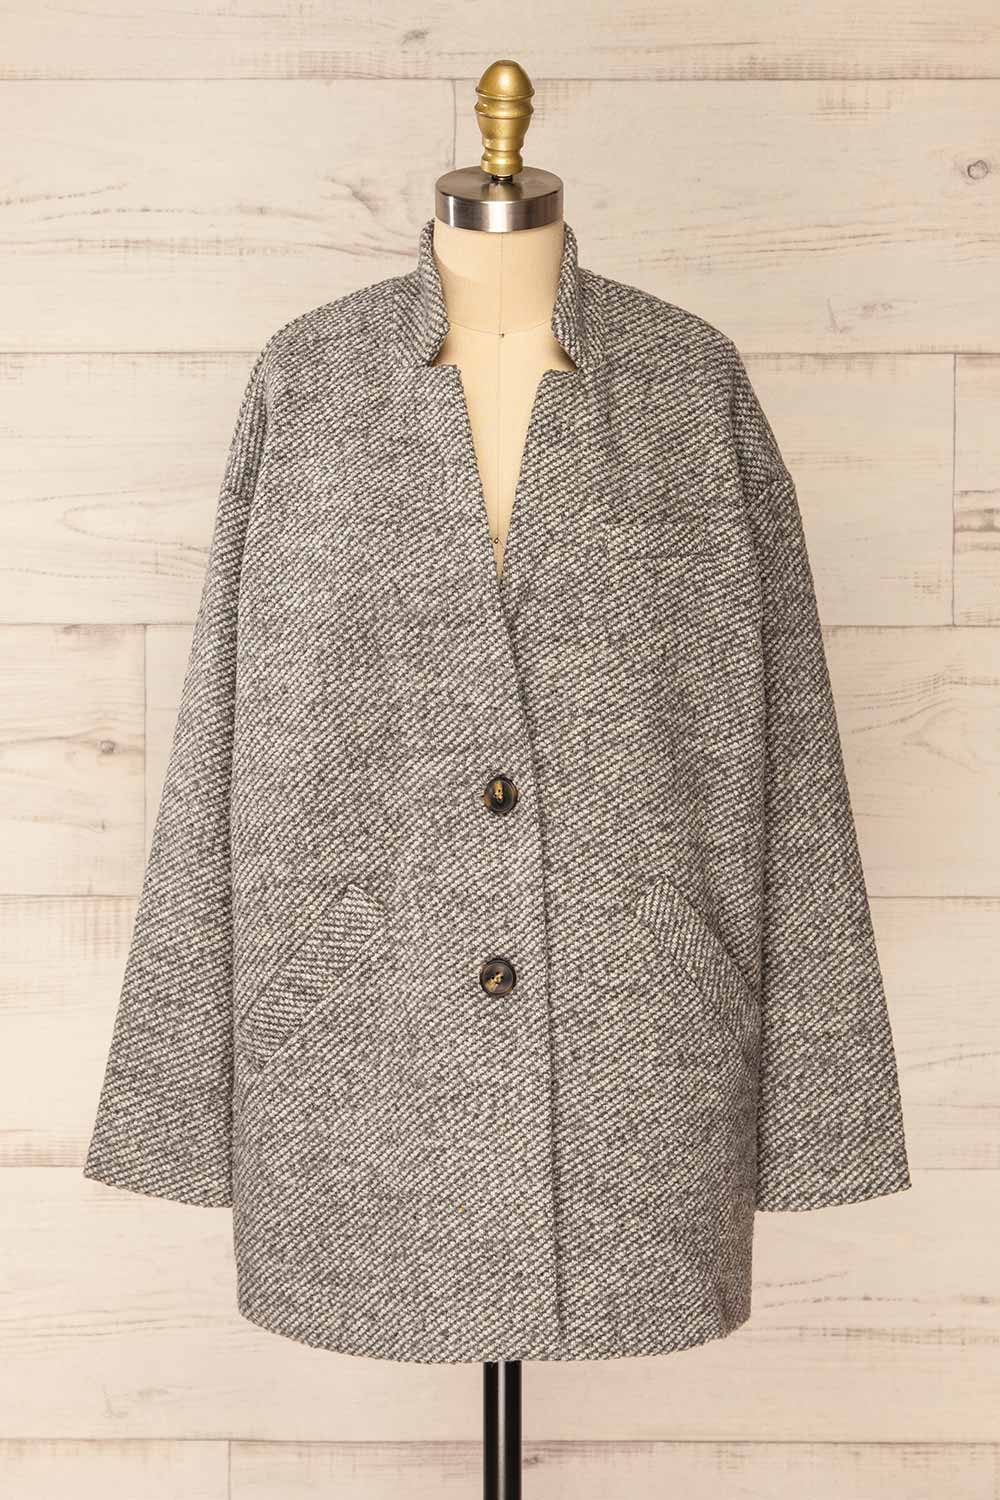 Nowskie Grey Short Coat w/ Buttons | La petite garçonne front view